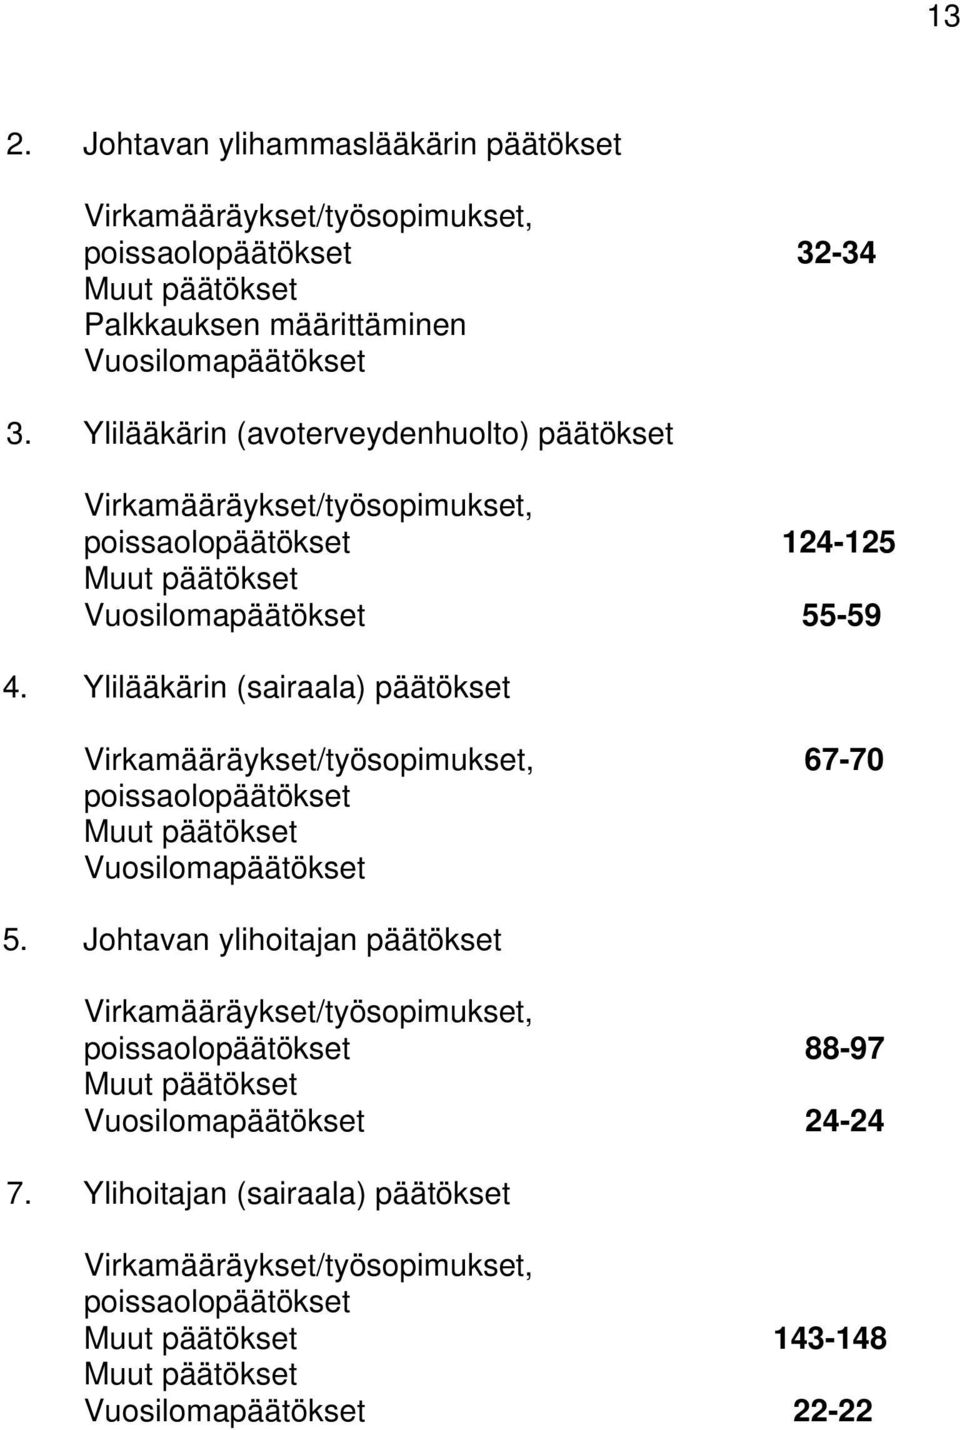 Ylilääkärin (sairaala) päätökset Virkamääräykset/työsopimukset, 67-70 poissaolopäätökset Muut päätökset Vuosilomapäätökset 5.